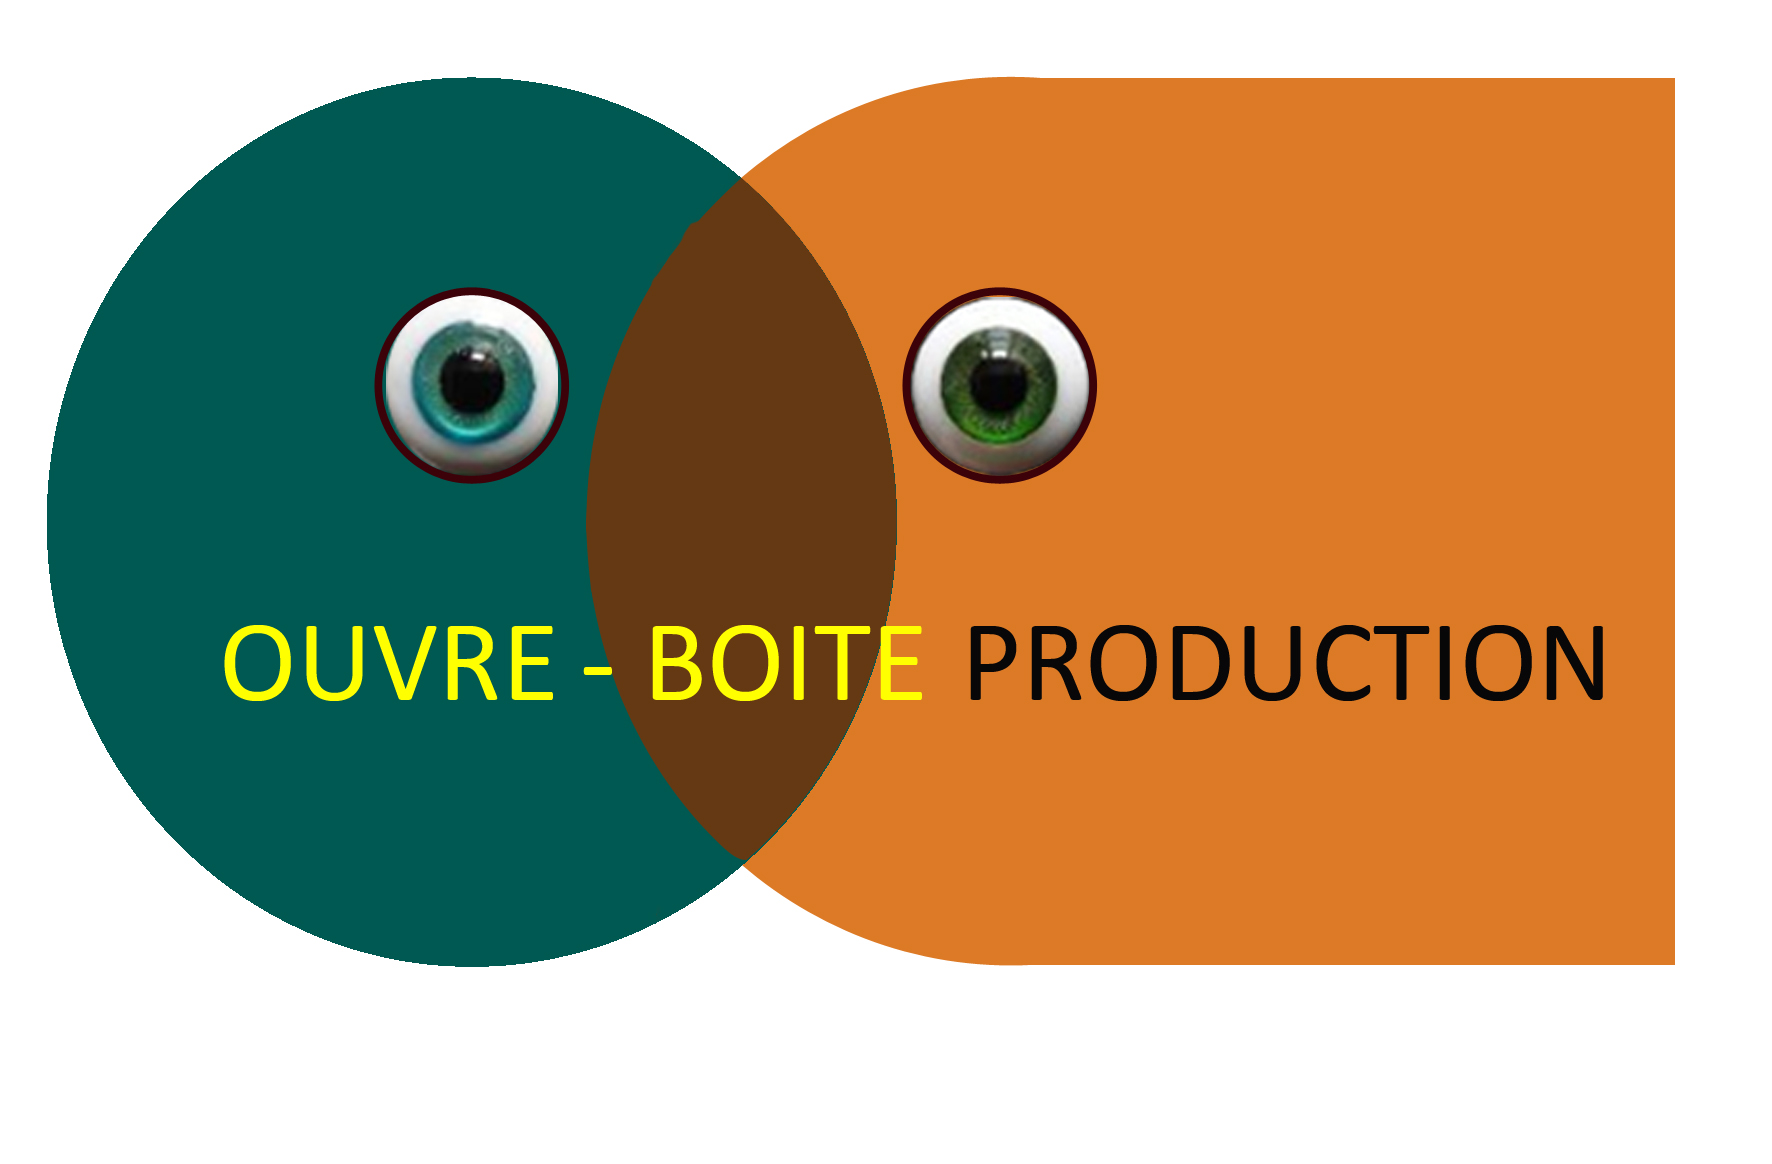 Ouvre-Boite Production 